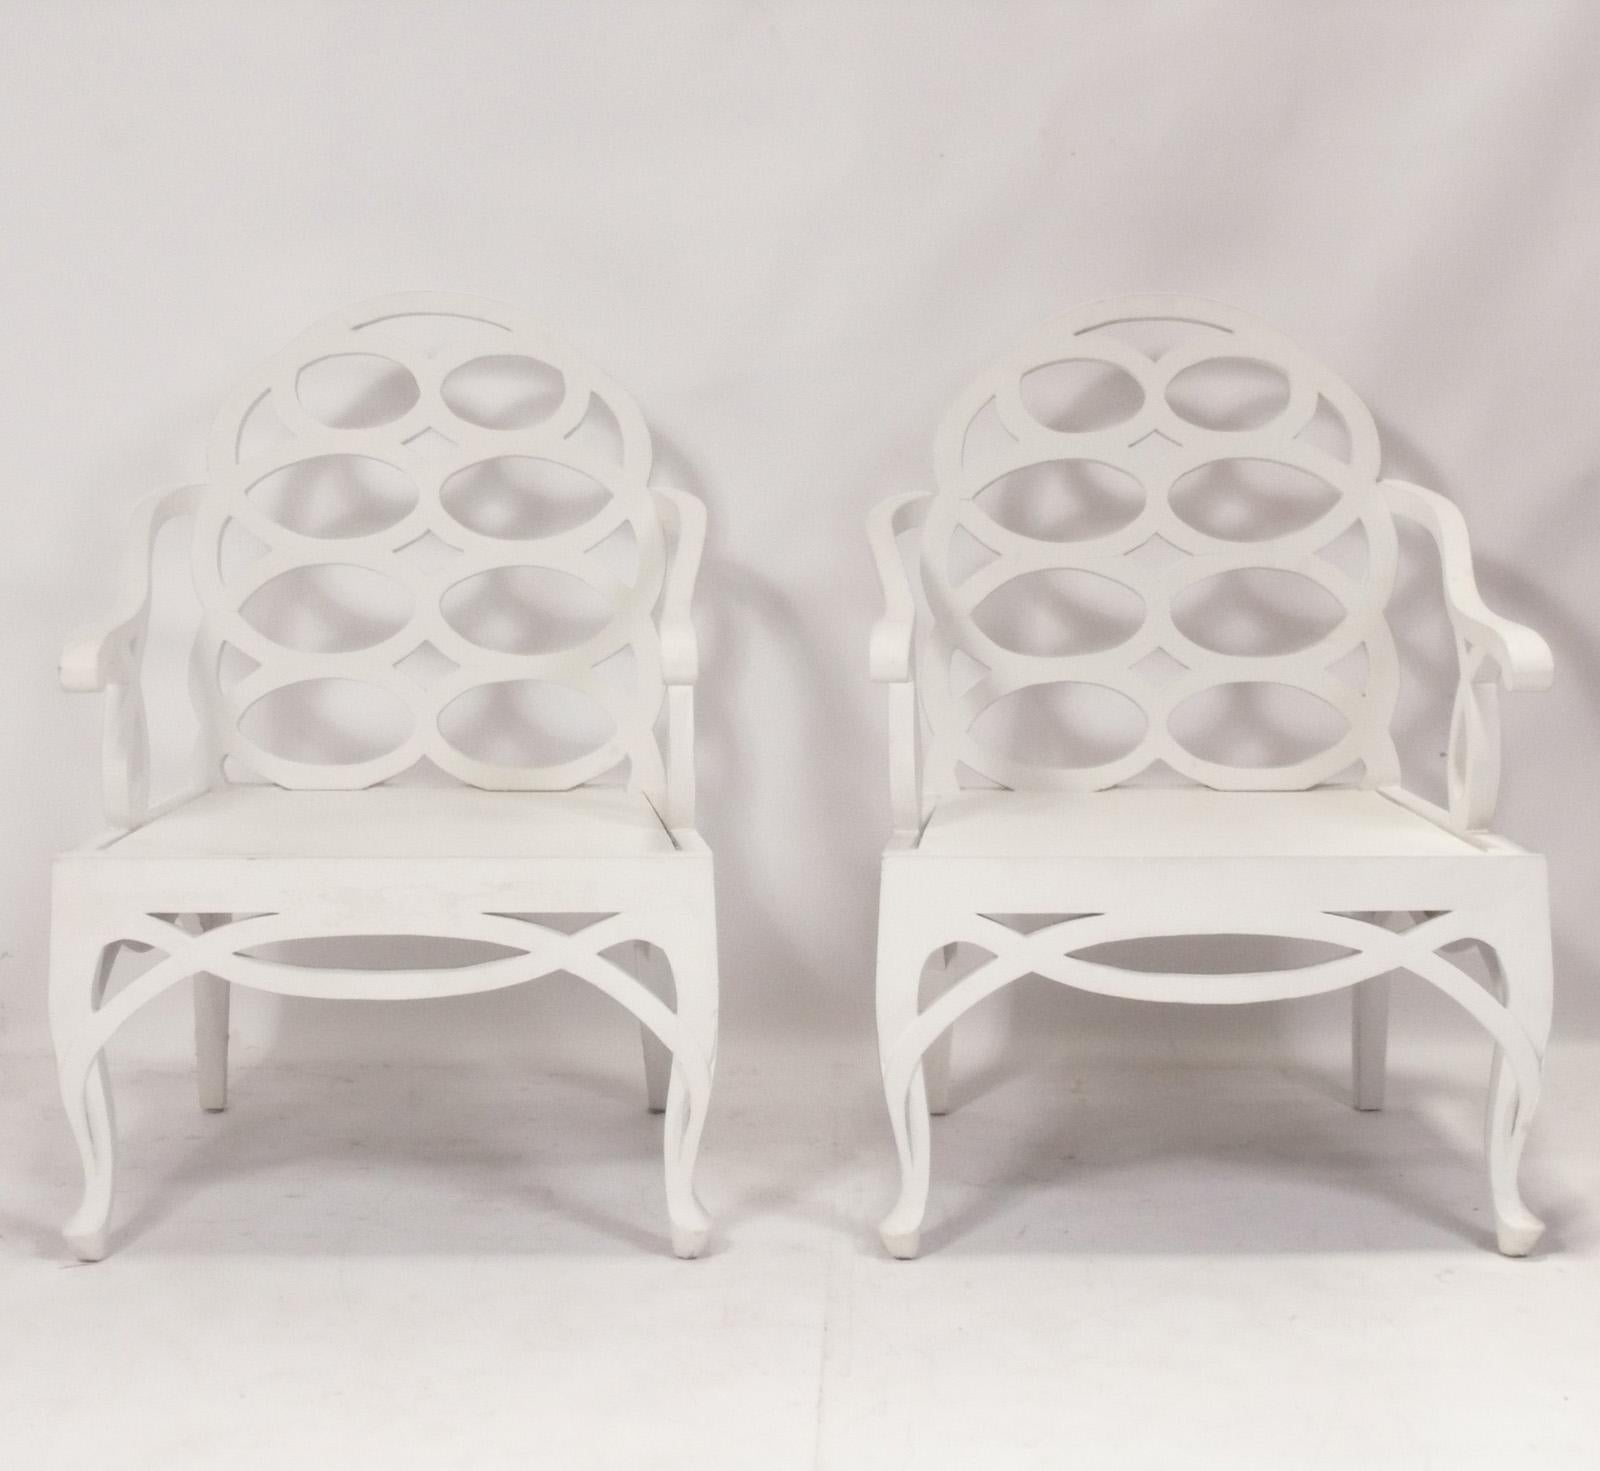 Paire de grands fauteuils Looping, dans le style de Frances Elkins, américain, vers les années 2000. Ces chaises sont basées sur le design des années 1930 de Frances Elkins, mais réalisées à une échelle légèrement plus grande. Ils sont actuellement